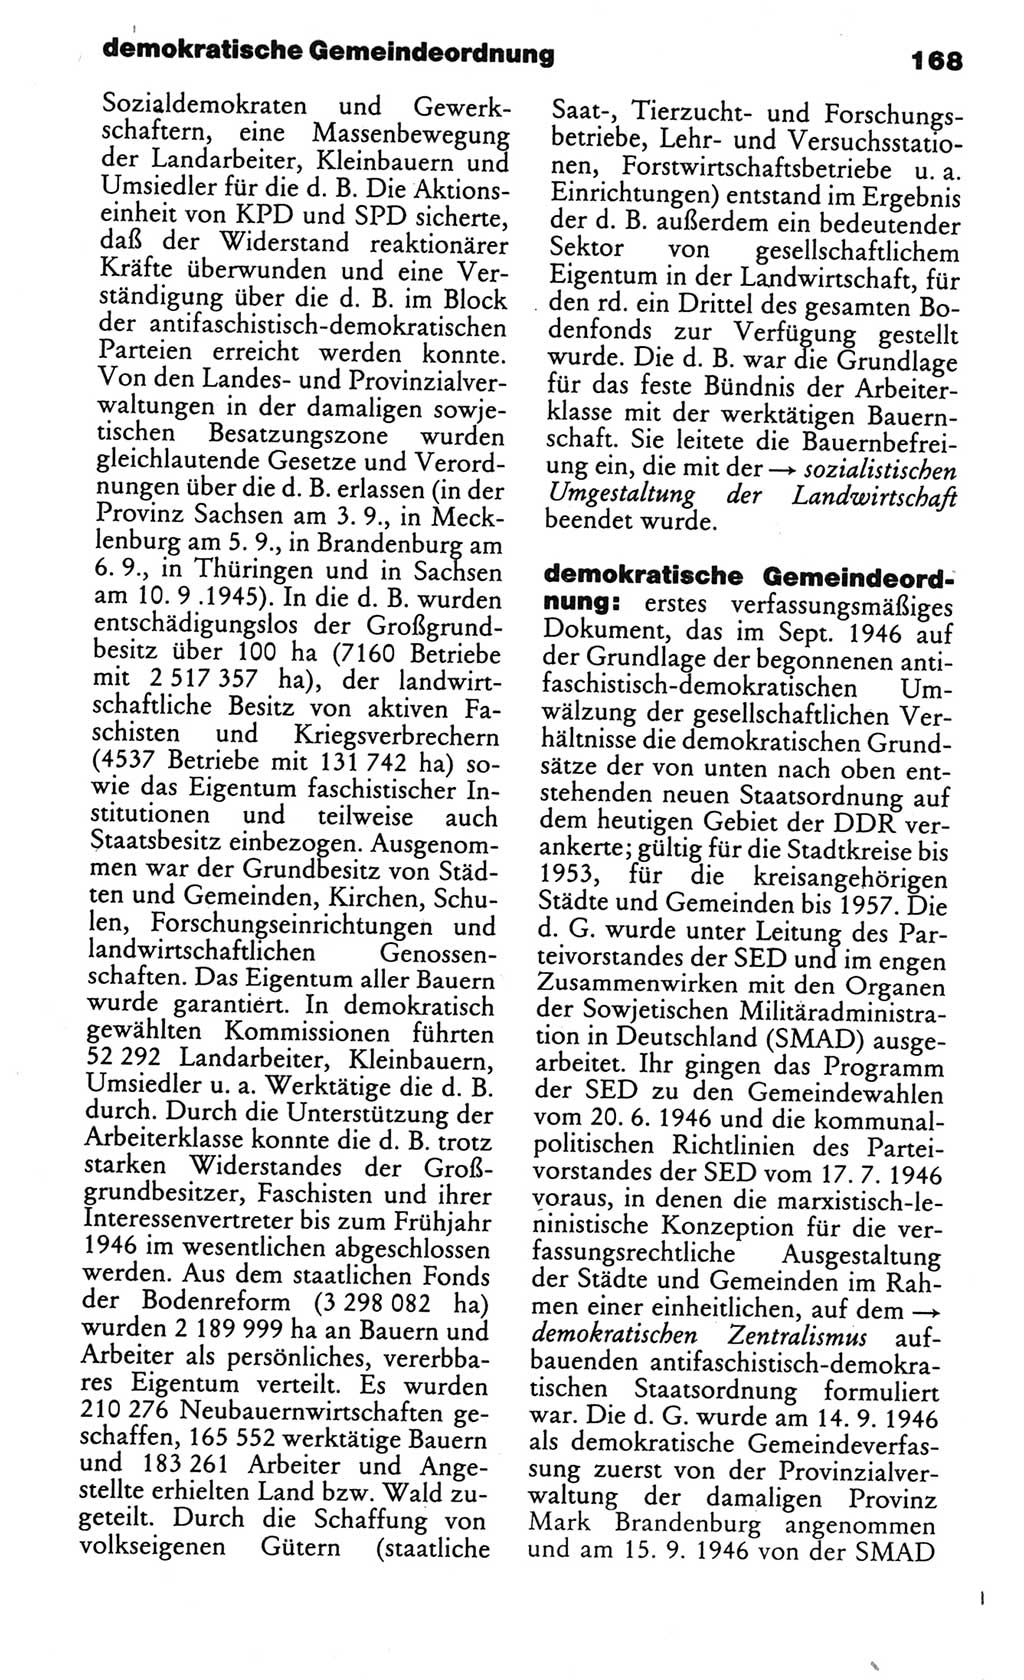 Kleines politisches Wörterbuch [Deutsche Demokratische Republik (DDR)] 1986, Seite 168 (Kl. pol. Wb. DDR 1986, S. 168)